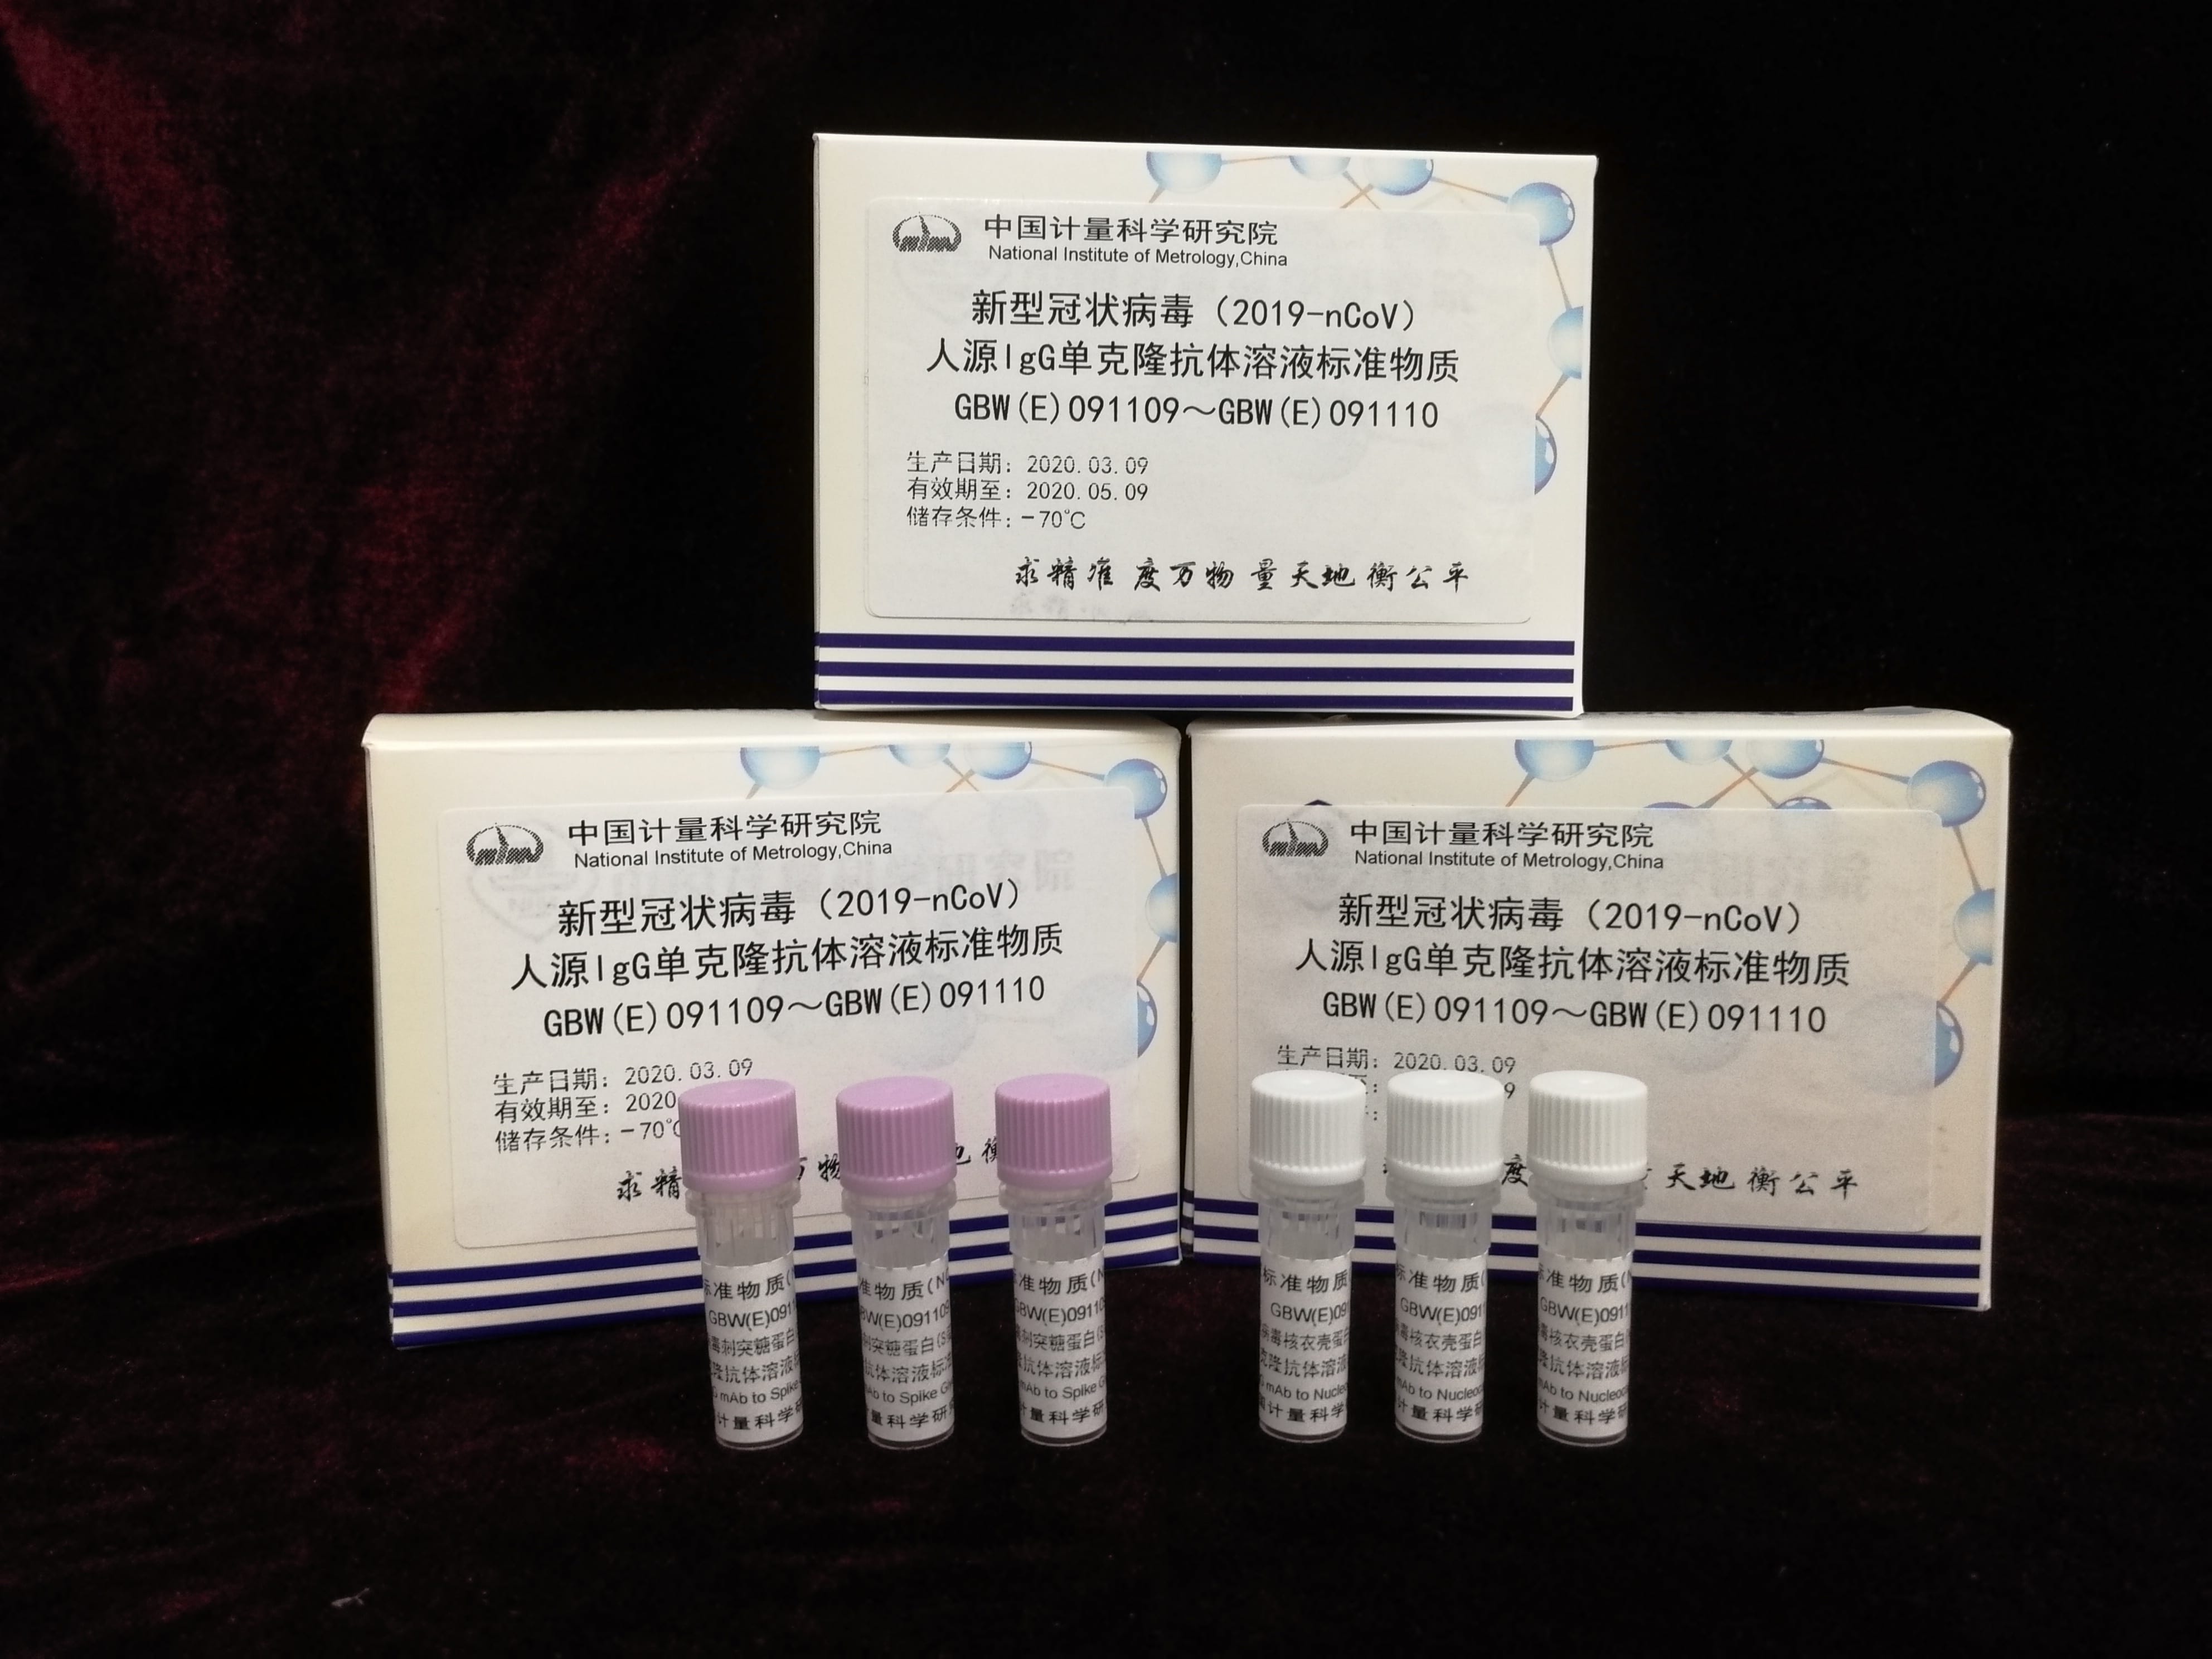 中国计量院成功研制新冠病毒免疫学检测用标准物质